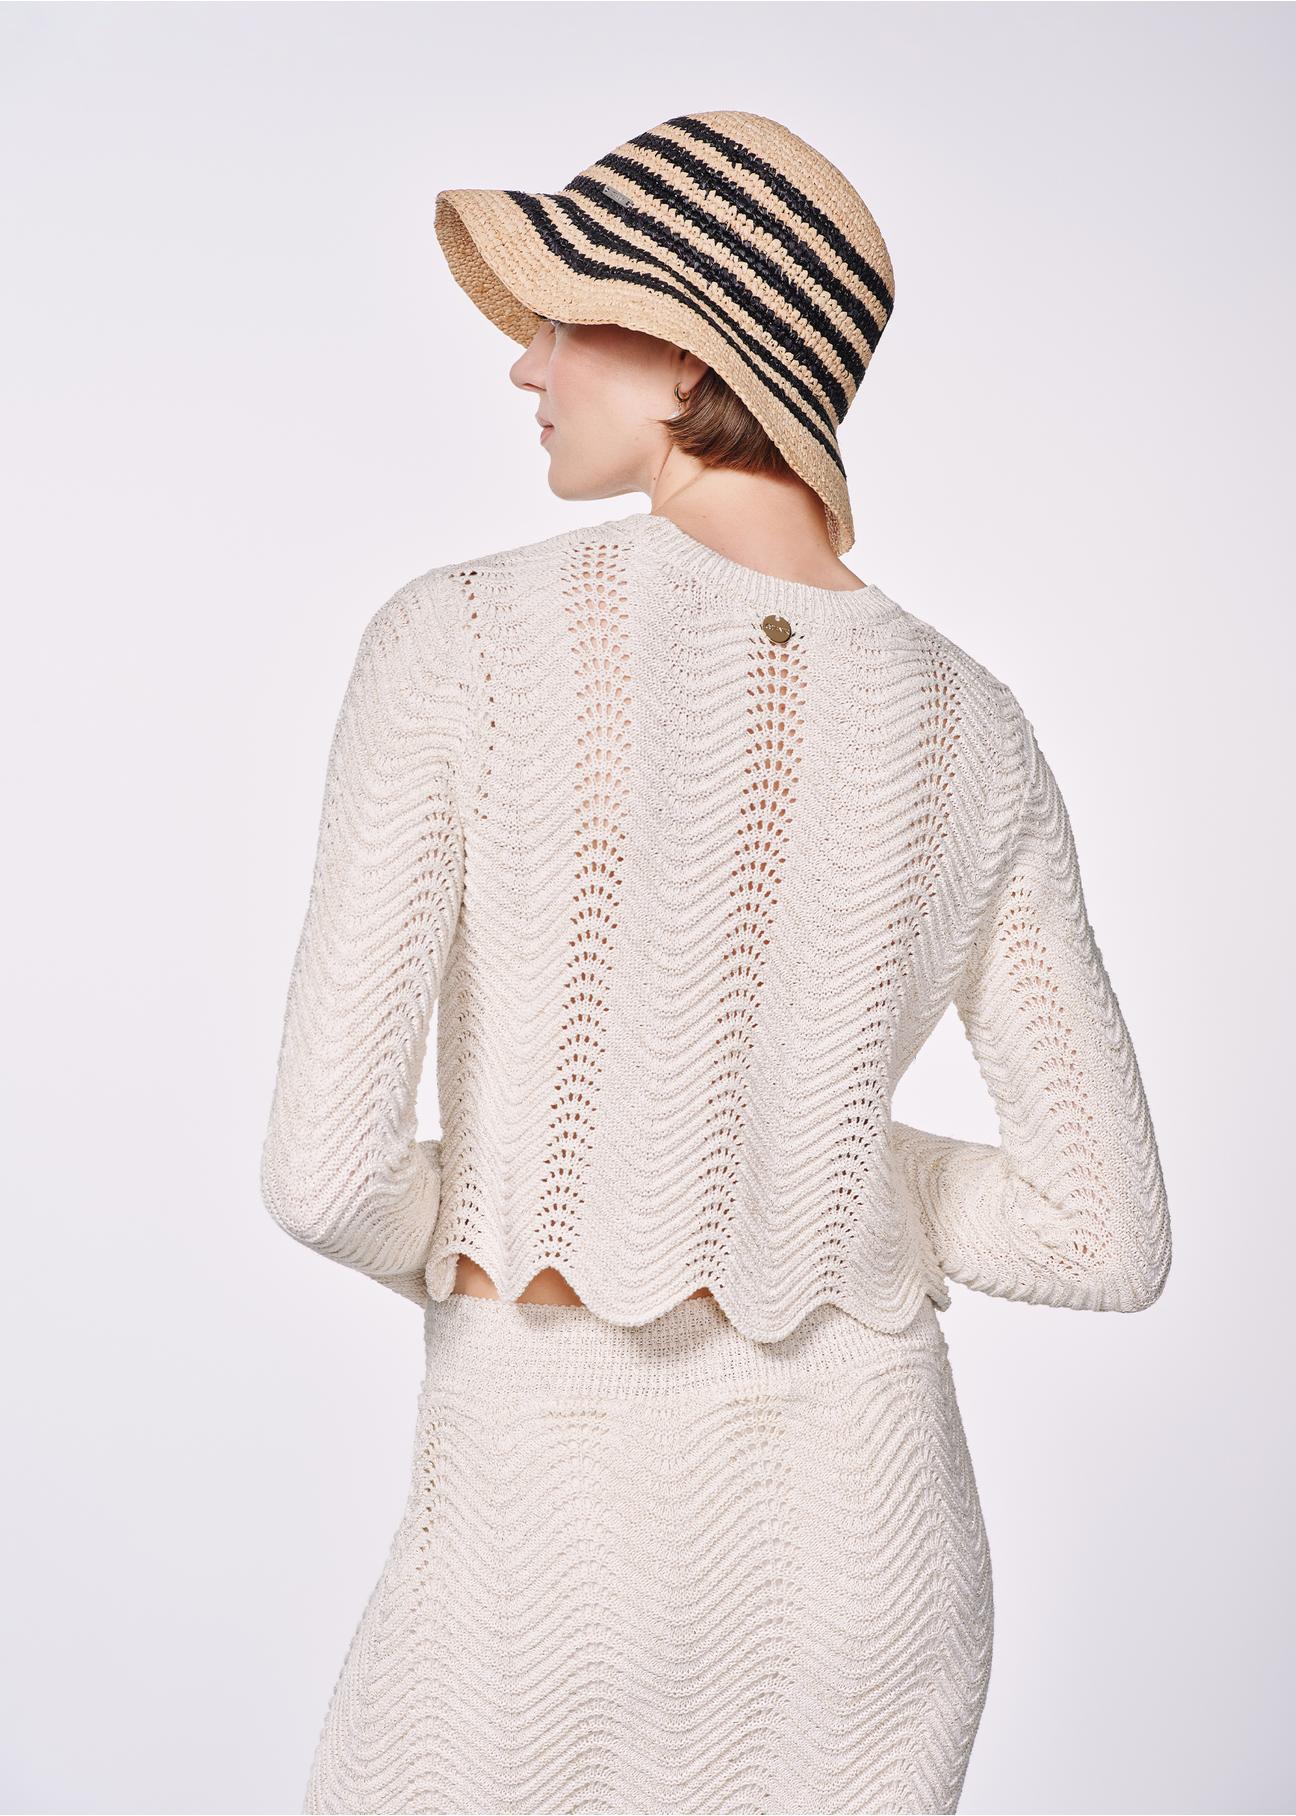 Kremowy ażurowy sweter damski SWEDT-0229-81(W24)-03